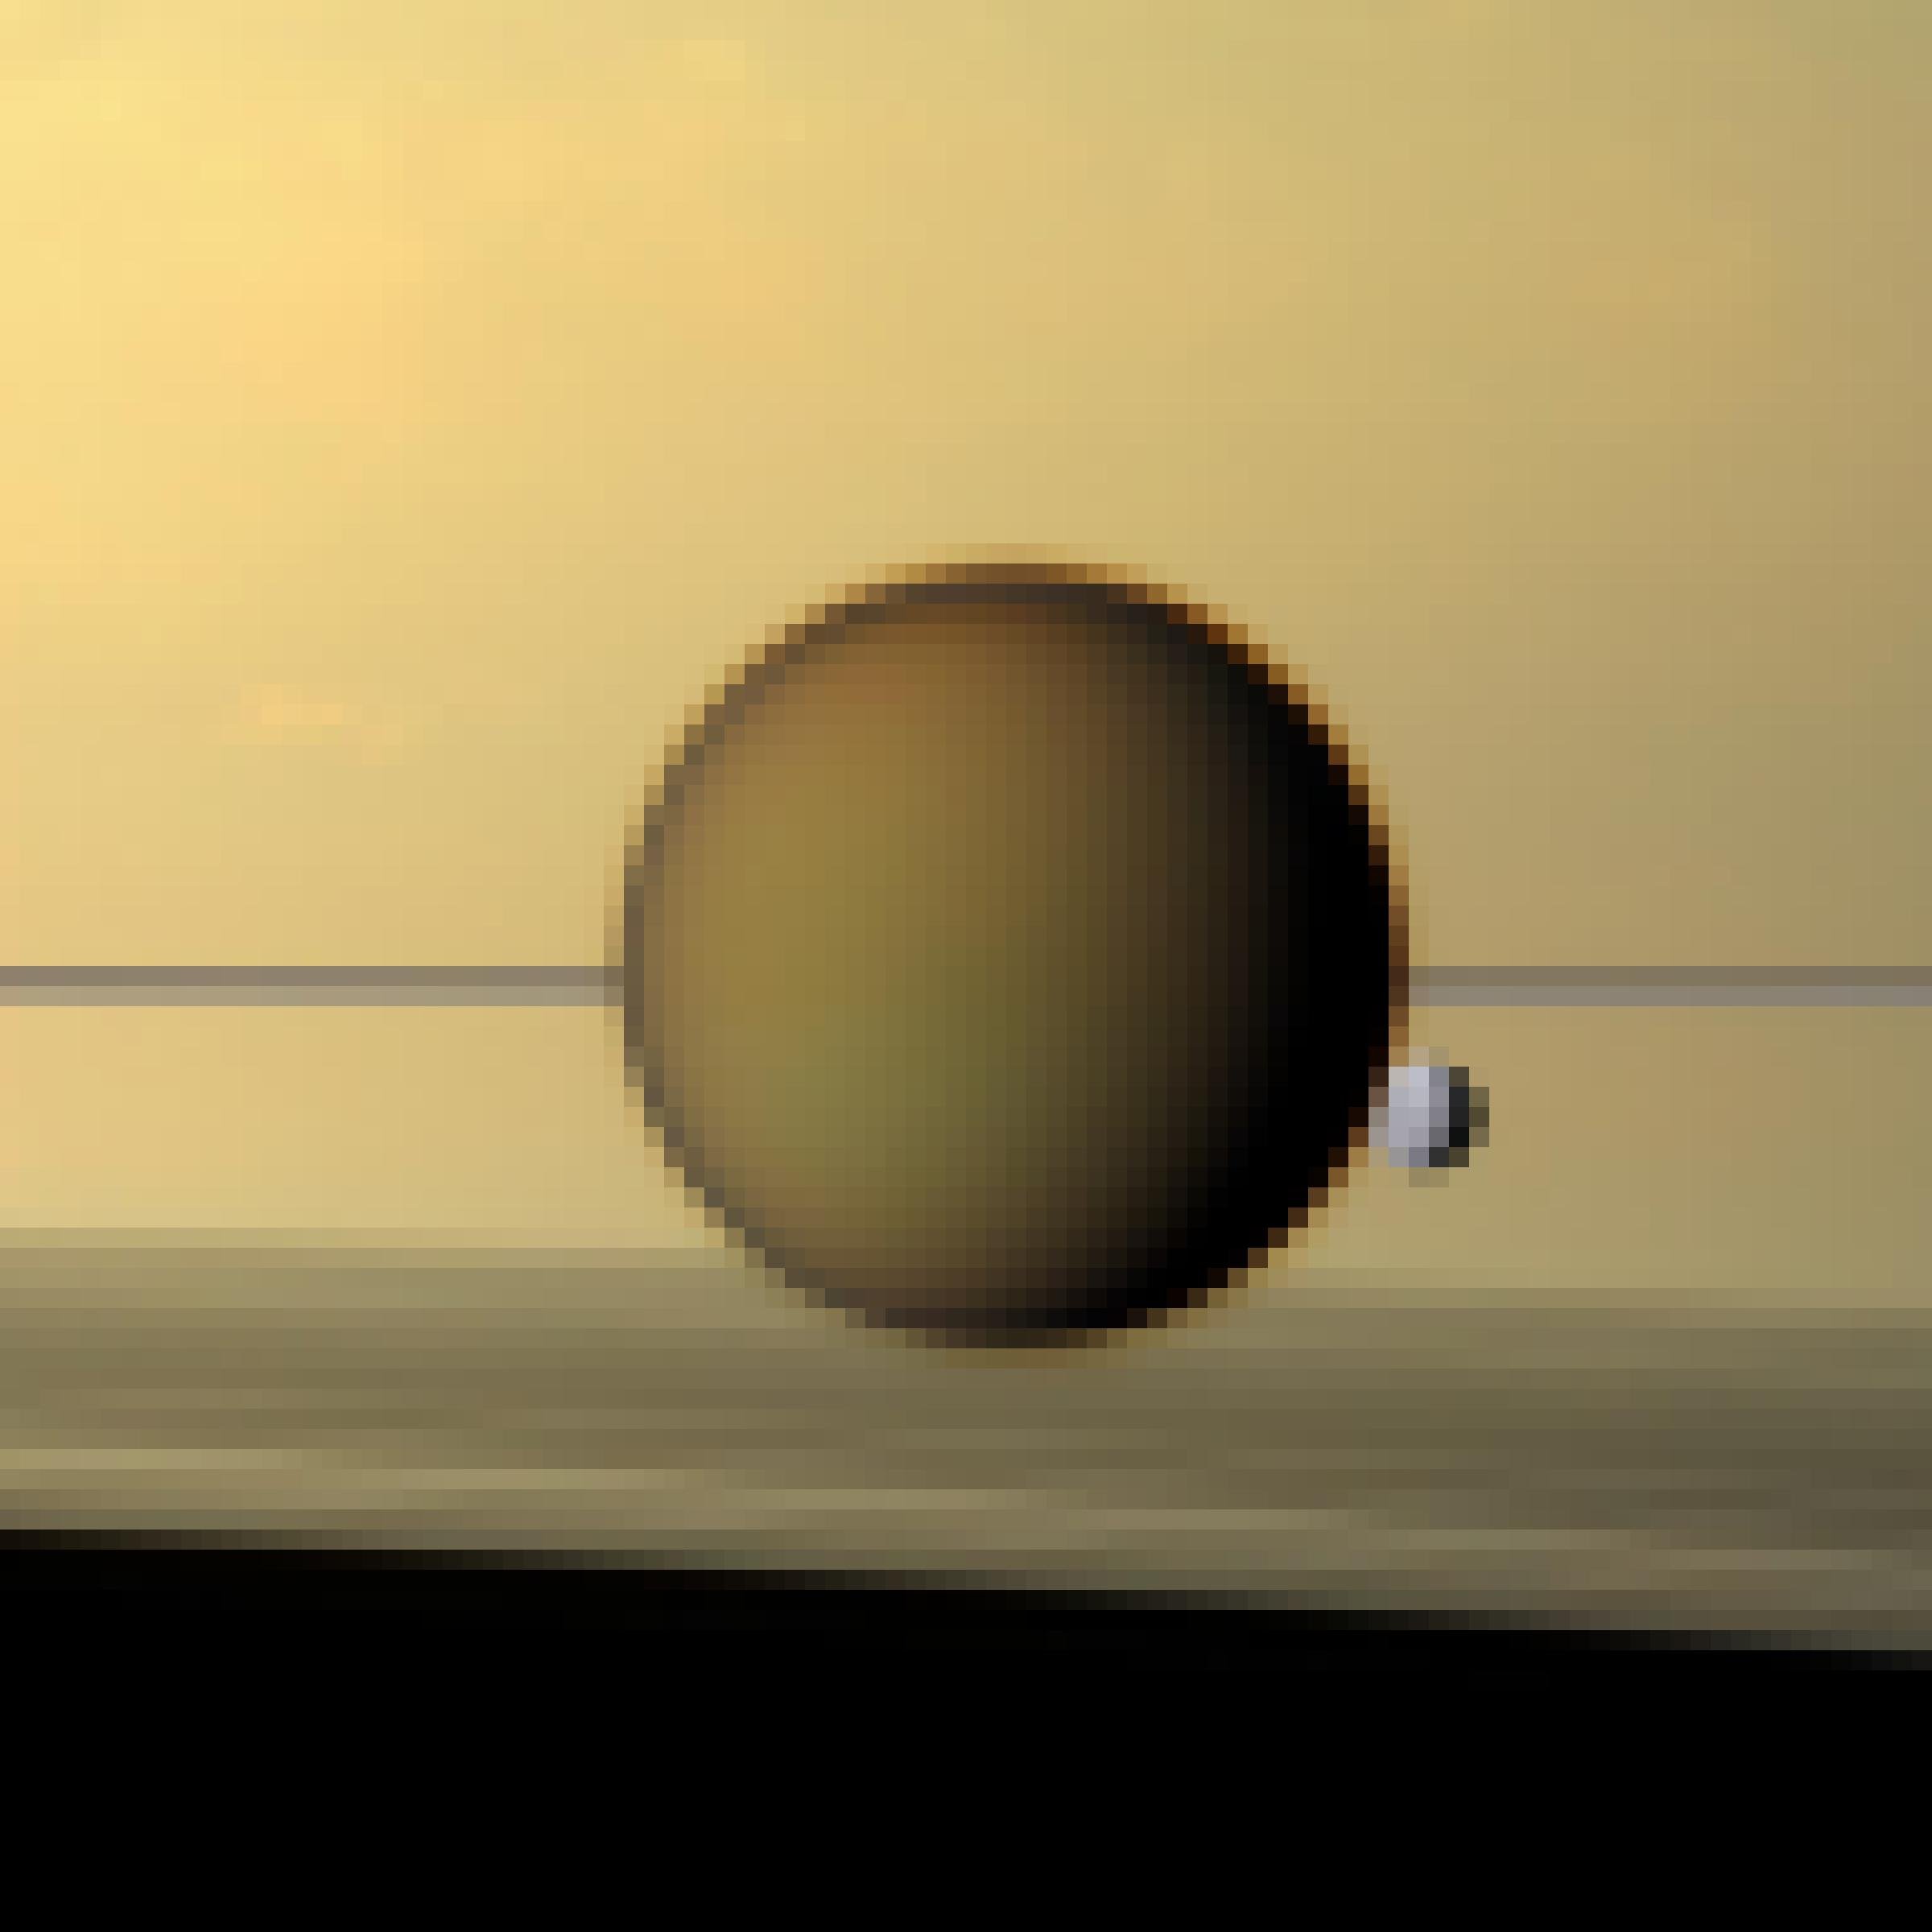 Der größte Saturnmond, Titan, in der Bildmitte; an diesen angrenzend auf Höhe von etwa vier Uhr und ein wenige verdeckt befindet sich der sehr viel kleinere Mond Dione. Dahinter ist ein Ausschnitt des Ringsystems des Saturn und von Saturn selbst zu erkennen.